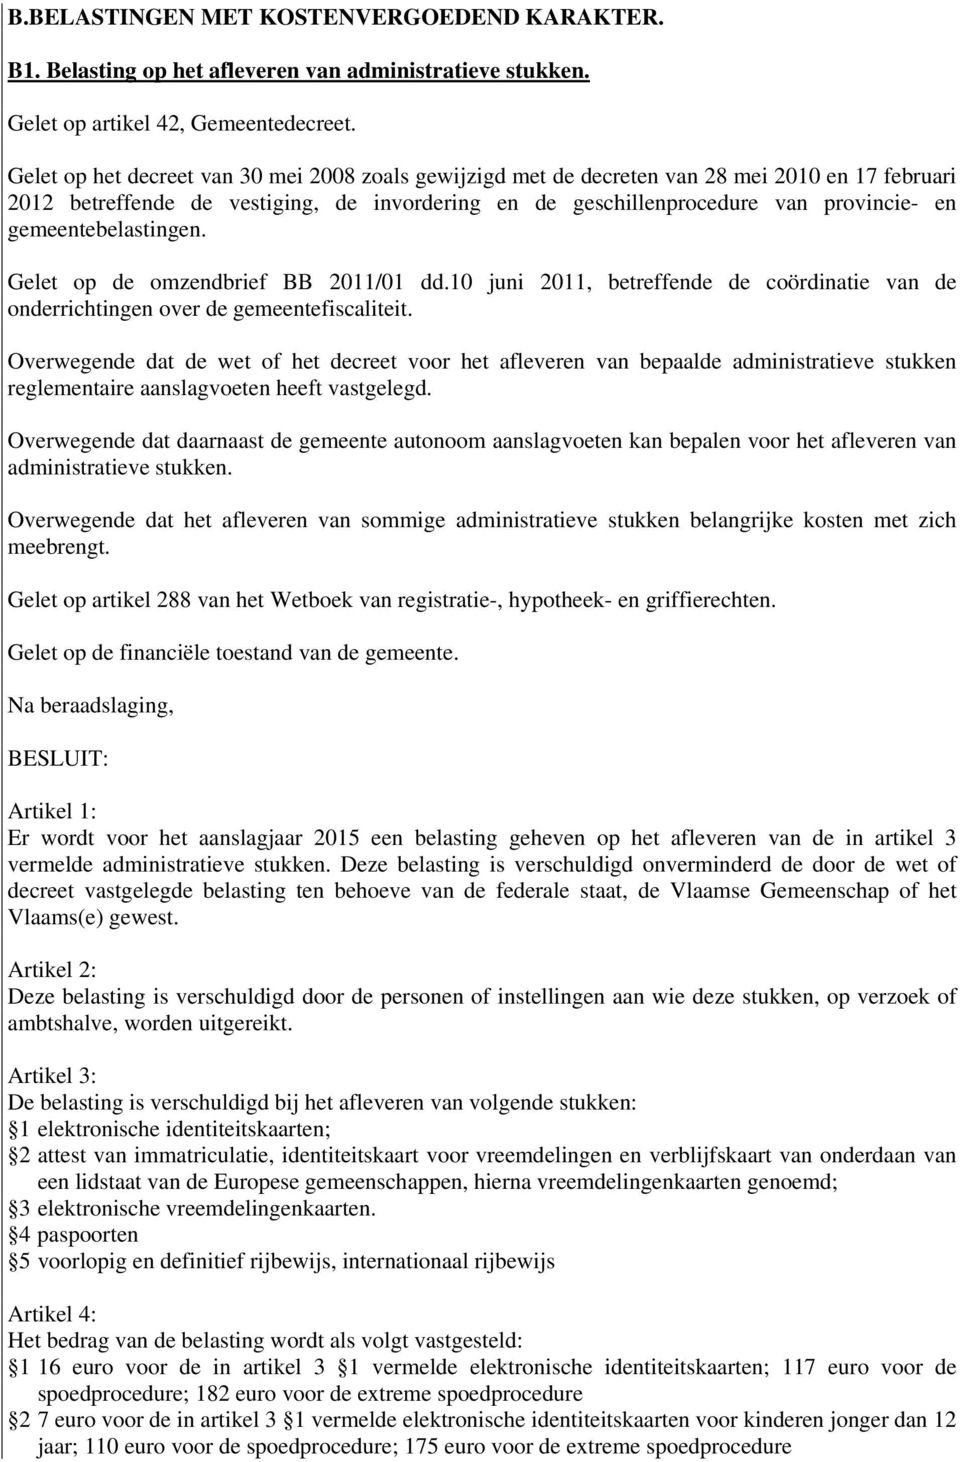 gemeentebelastingen. Gelet op de omzendbrief BB 2011/01 dd.10 juni 2011, betreffende de coördinatie van de onderrichtingen over de gemeentefiscaliteit.